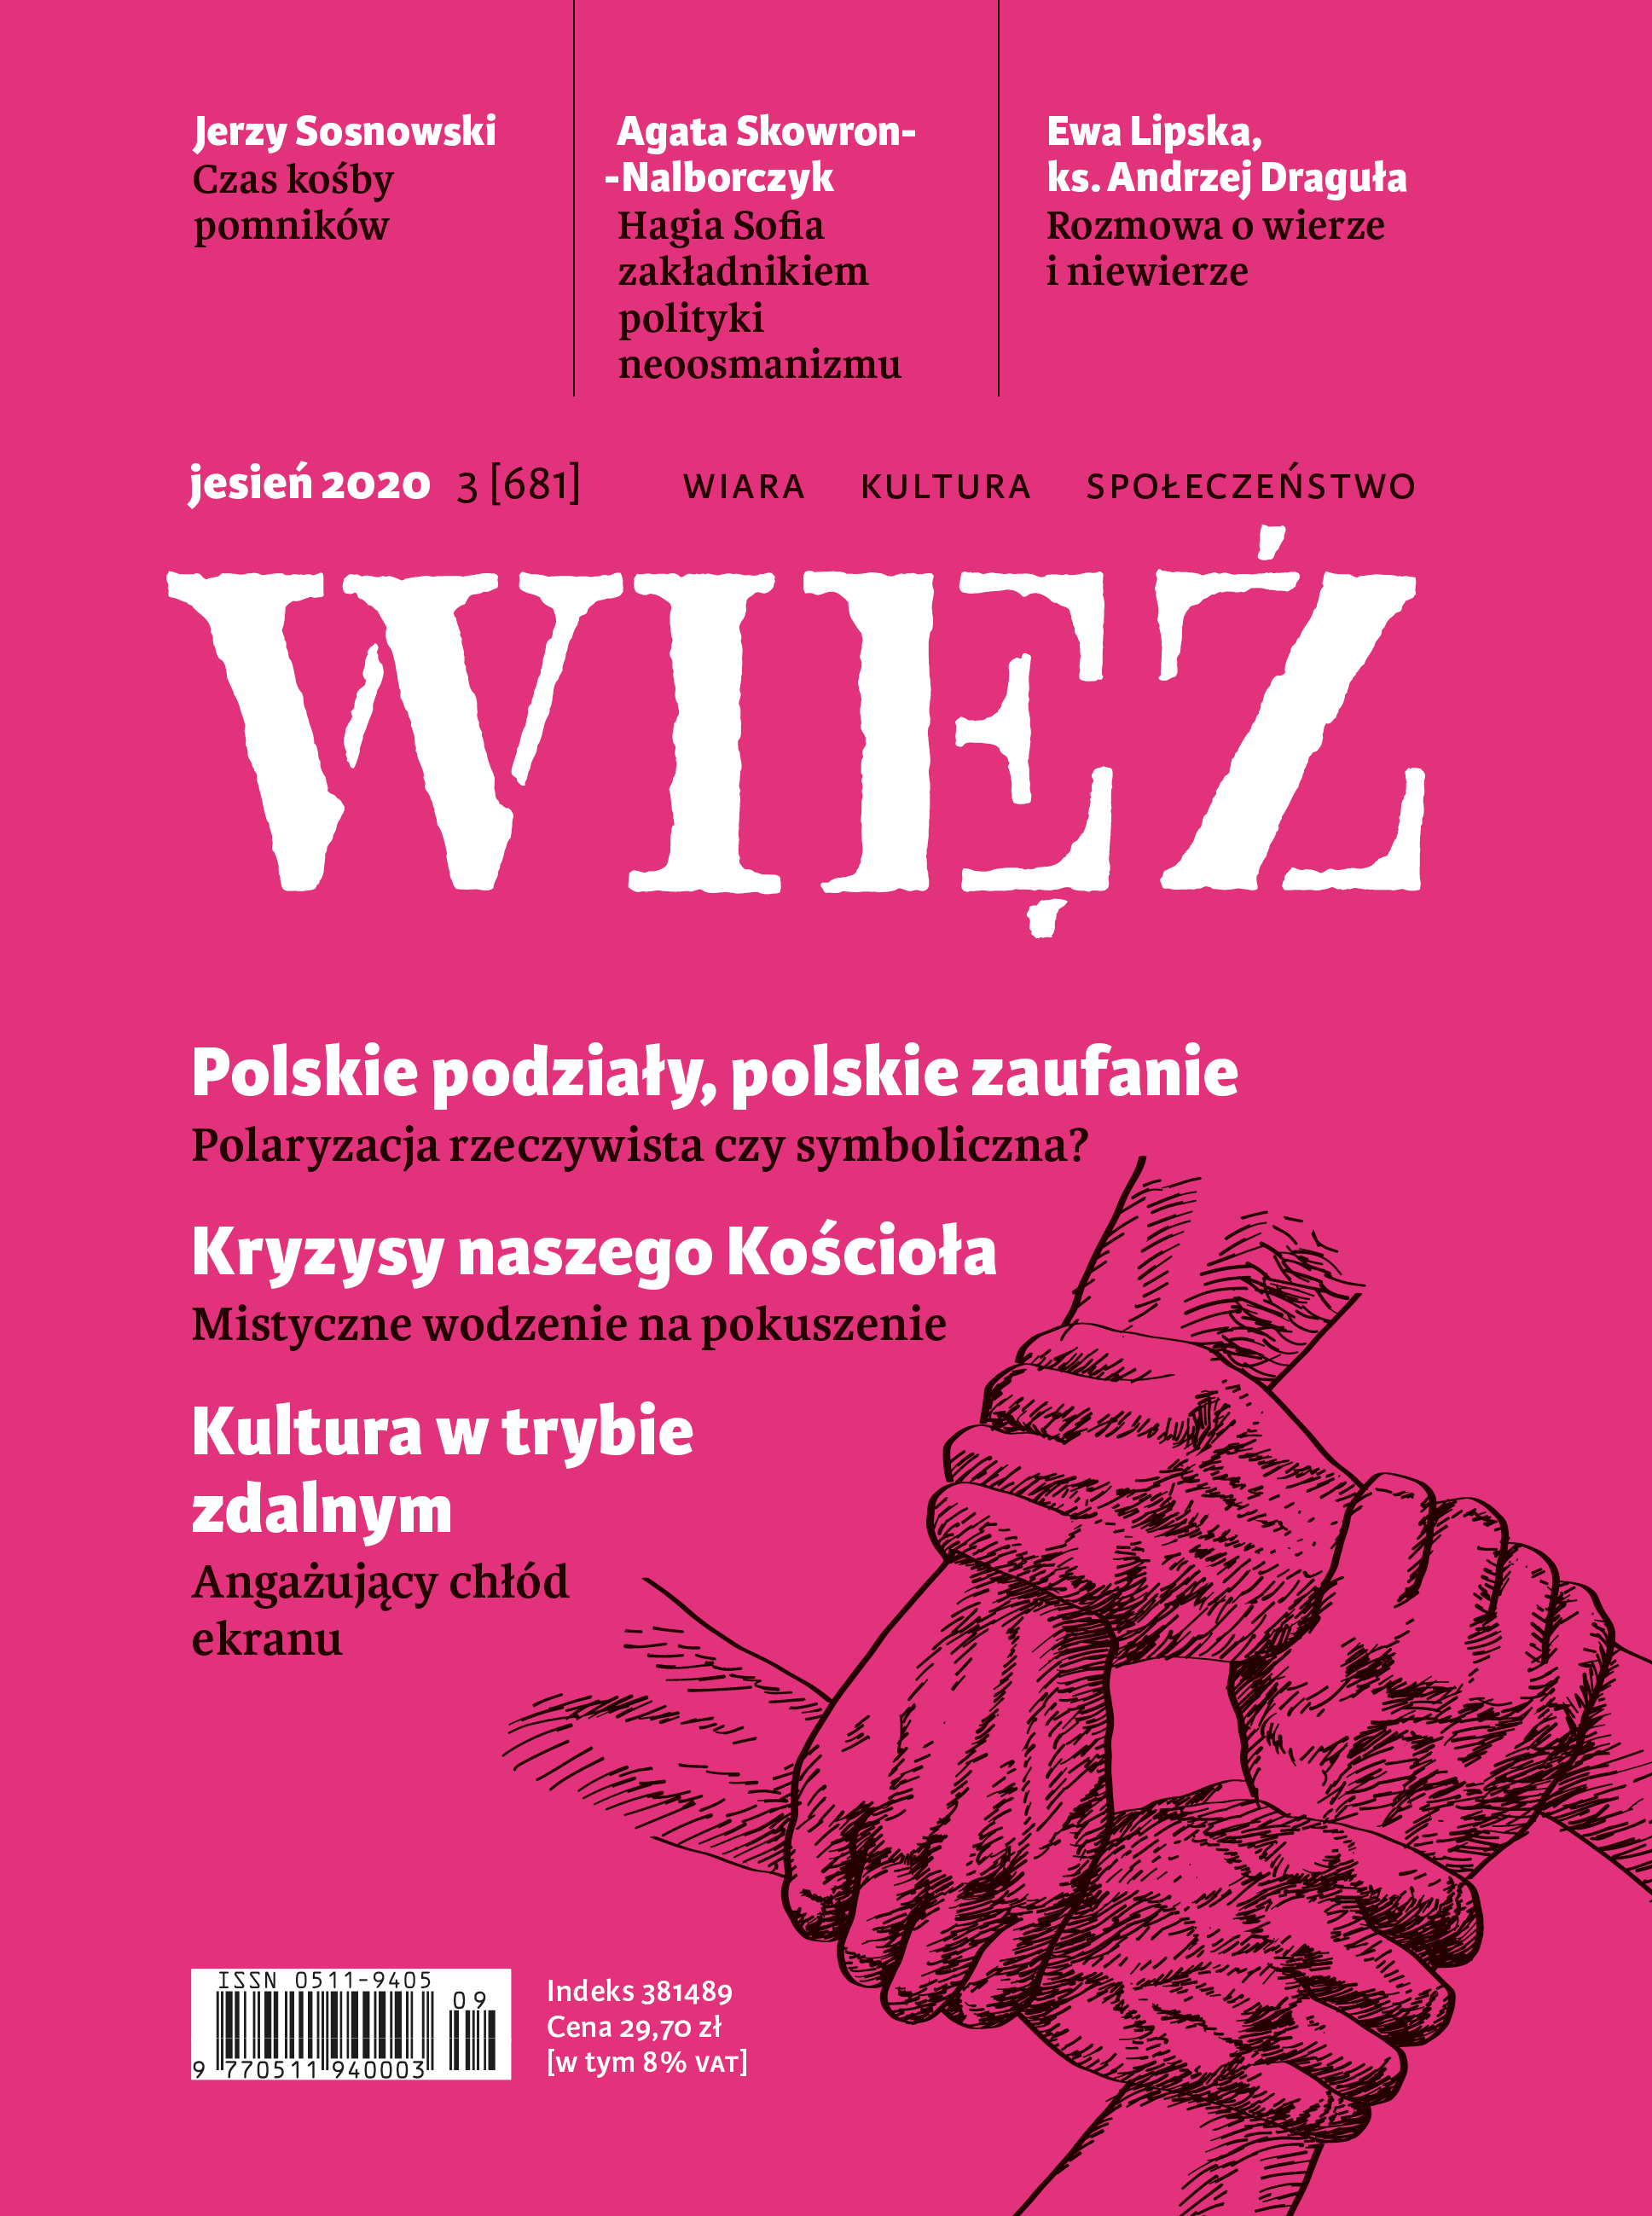 Quality. Jar of Popiełuszkow Cover Image